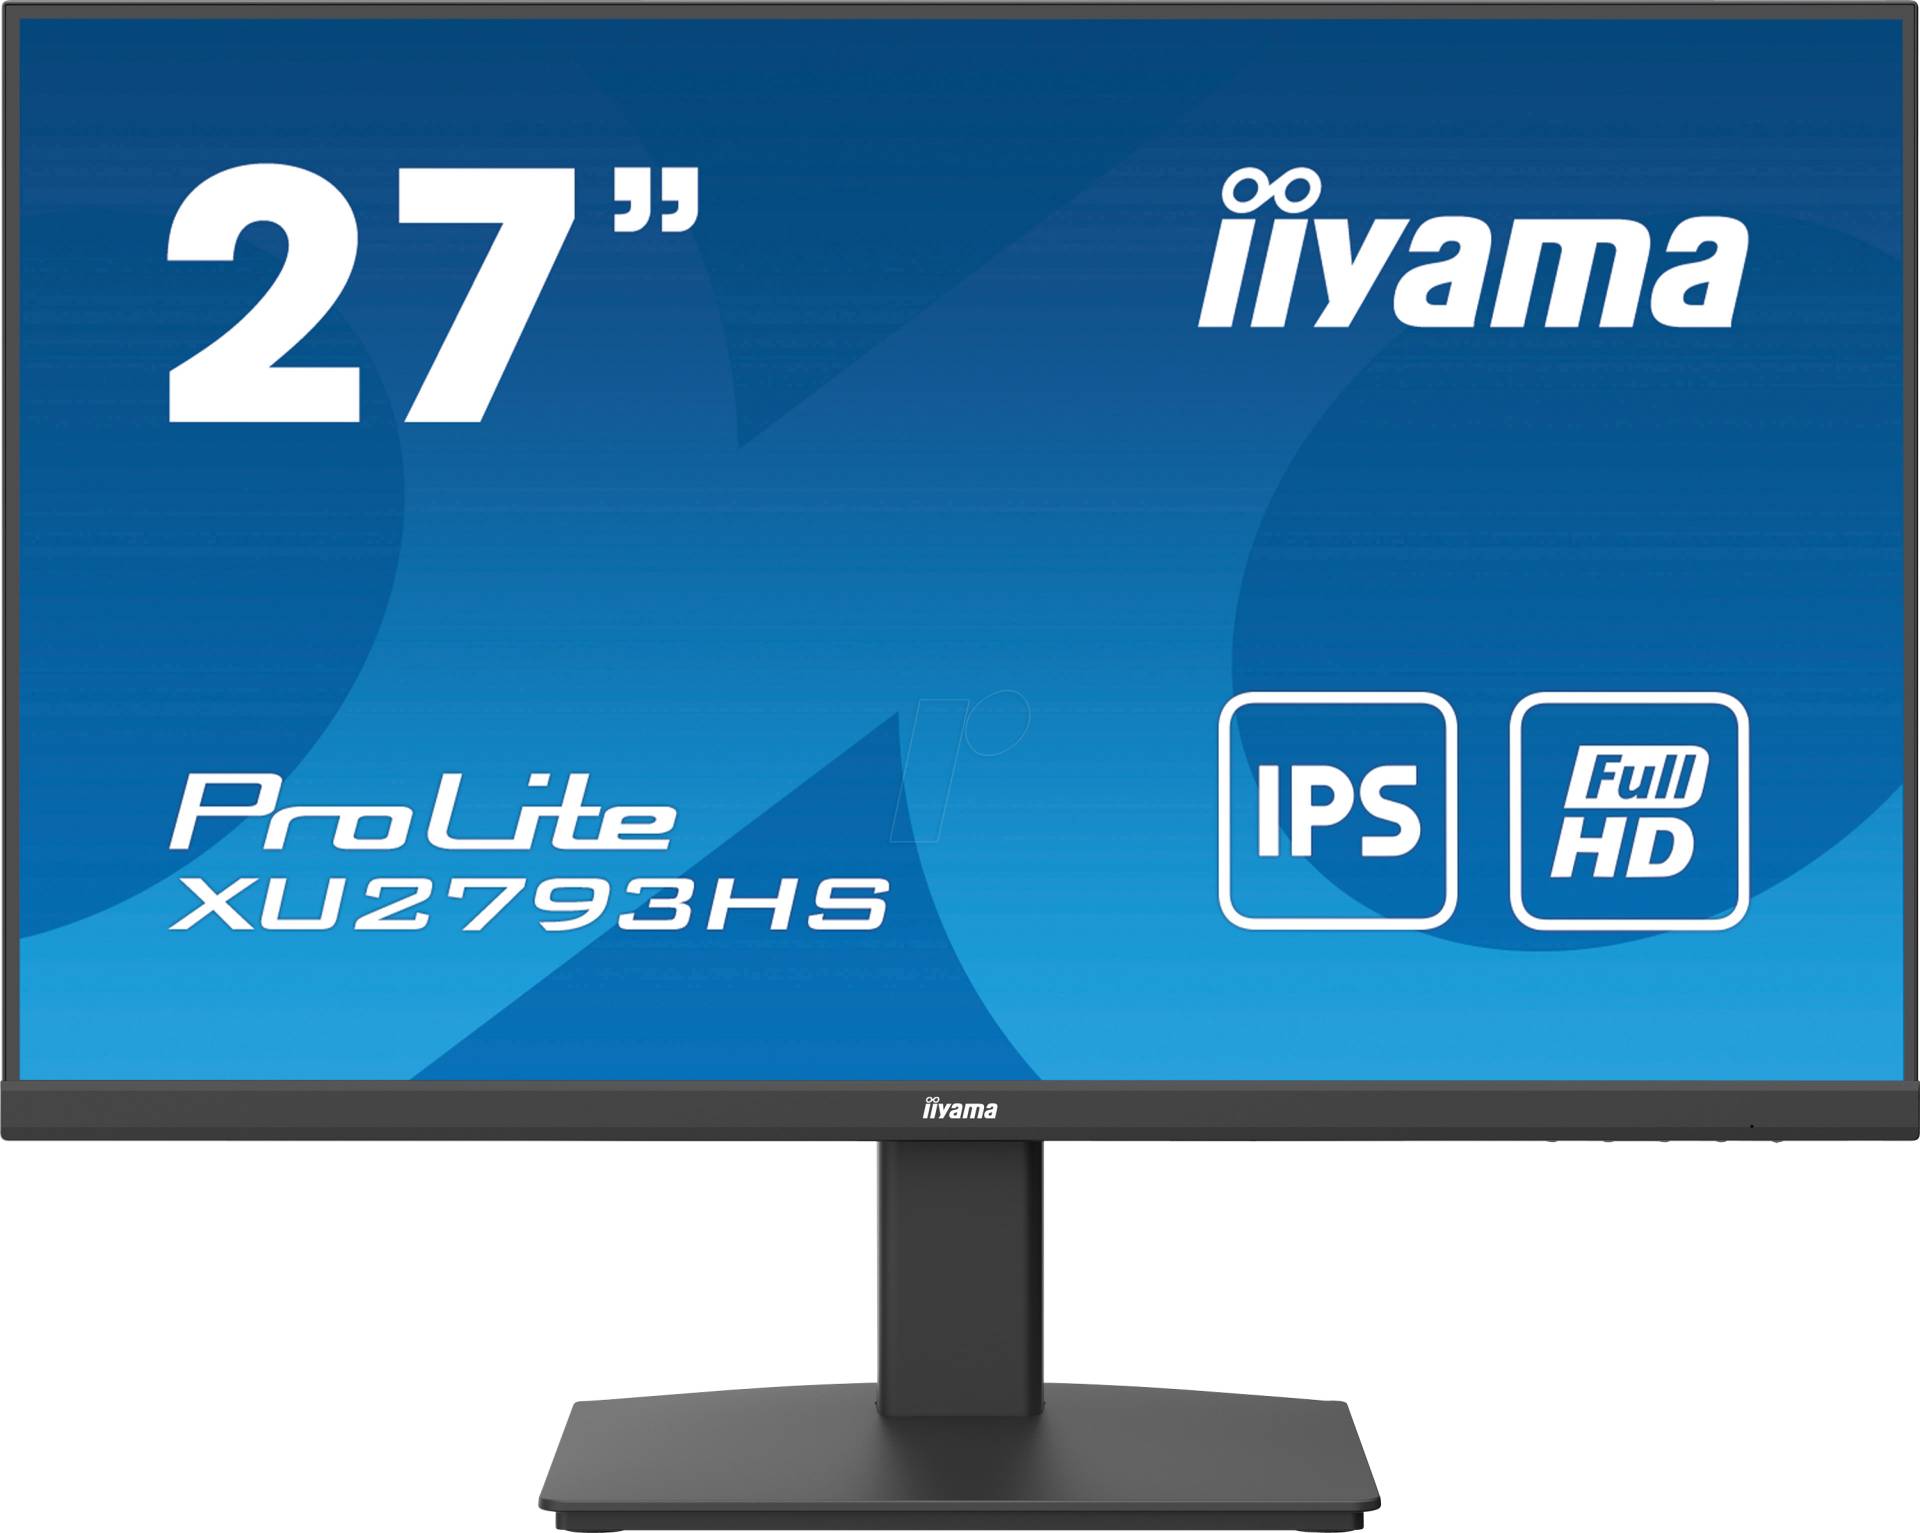 IIY XU2793HSB6 - 69cm Monitor, 1080p von Iiyama